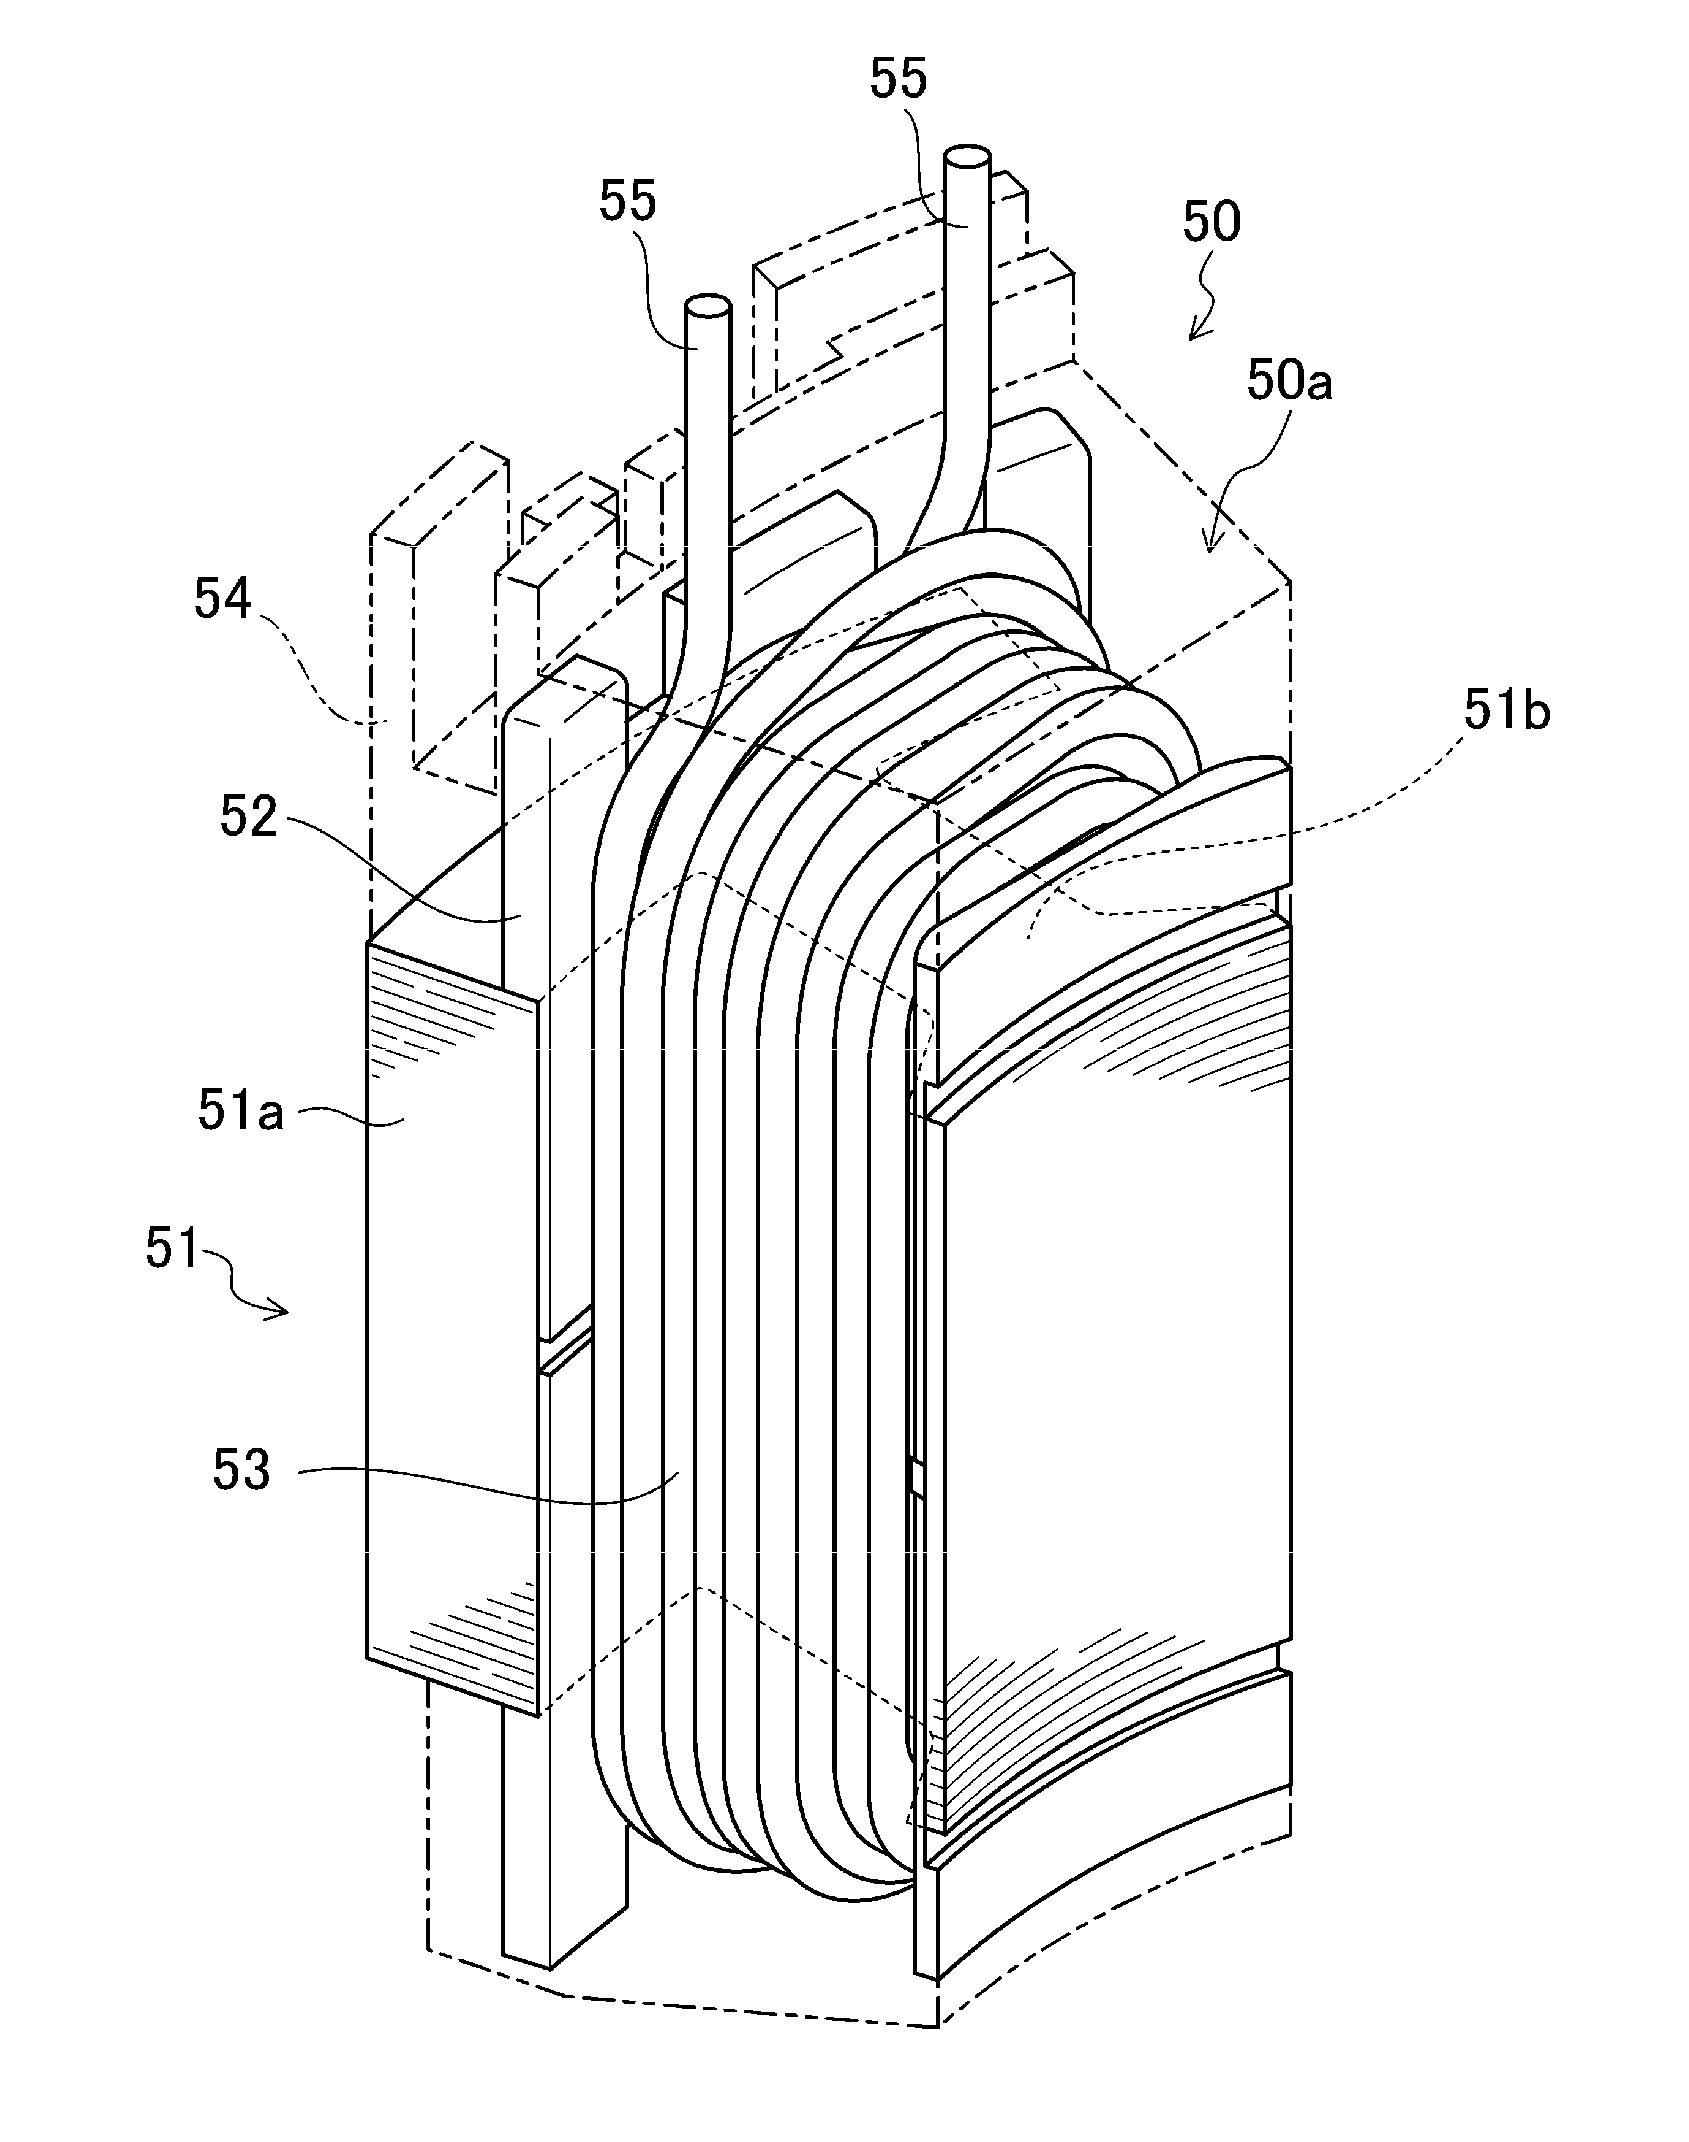 Stator segment and motor